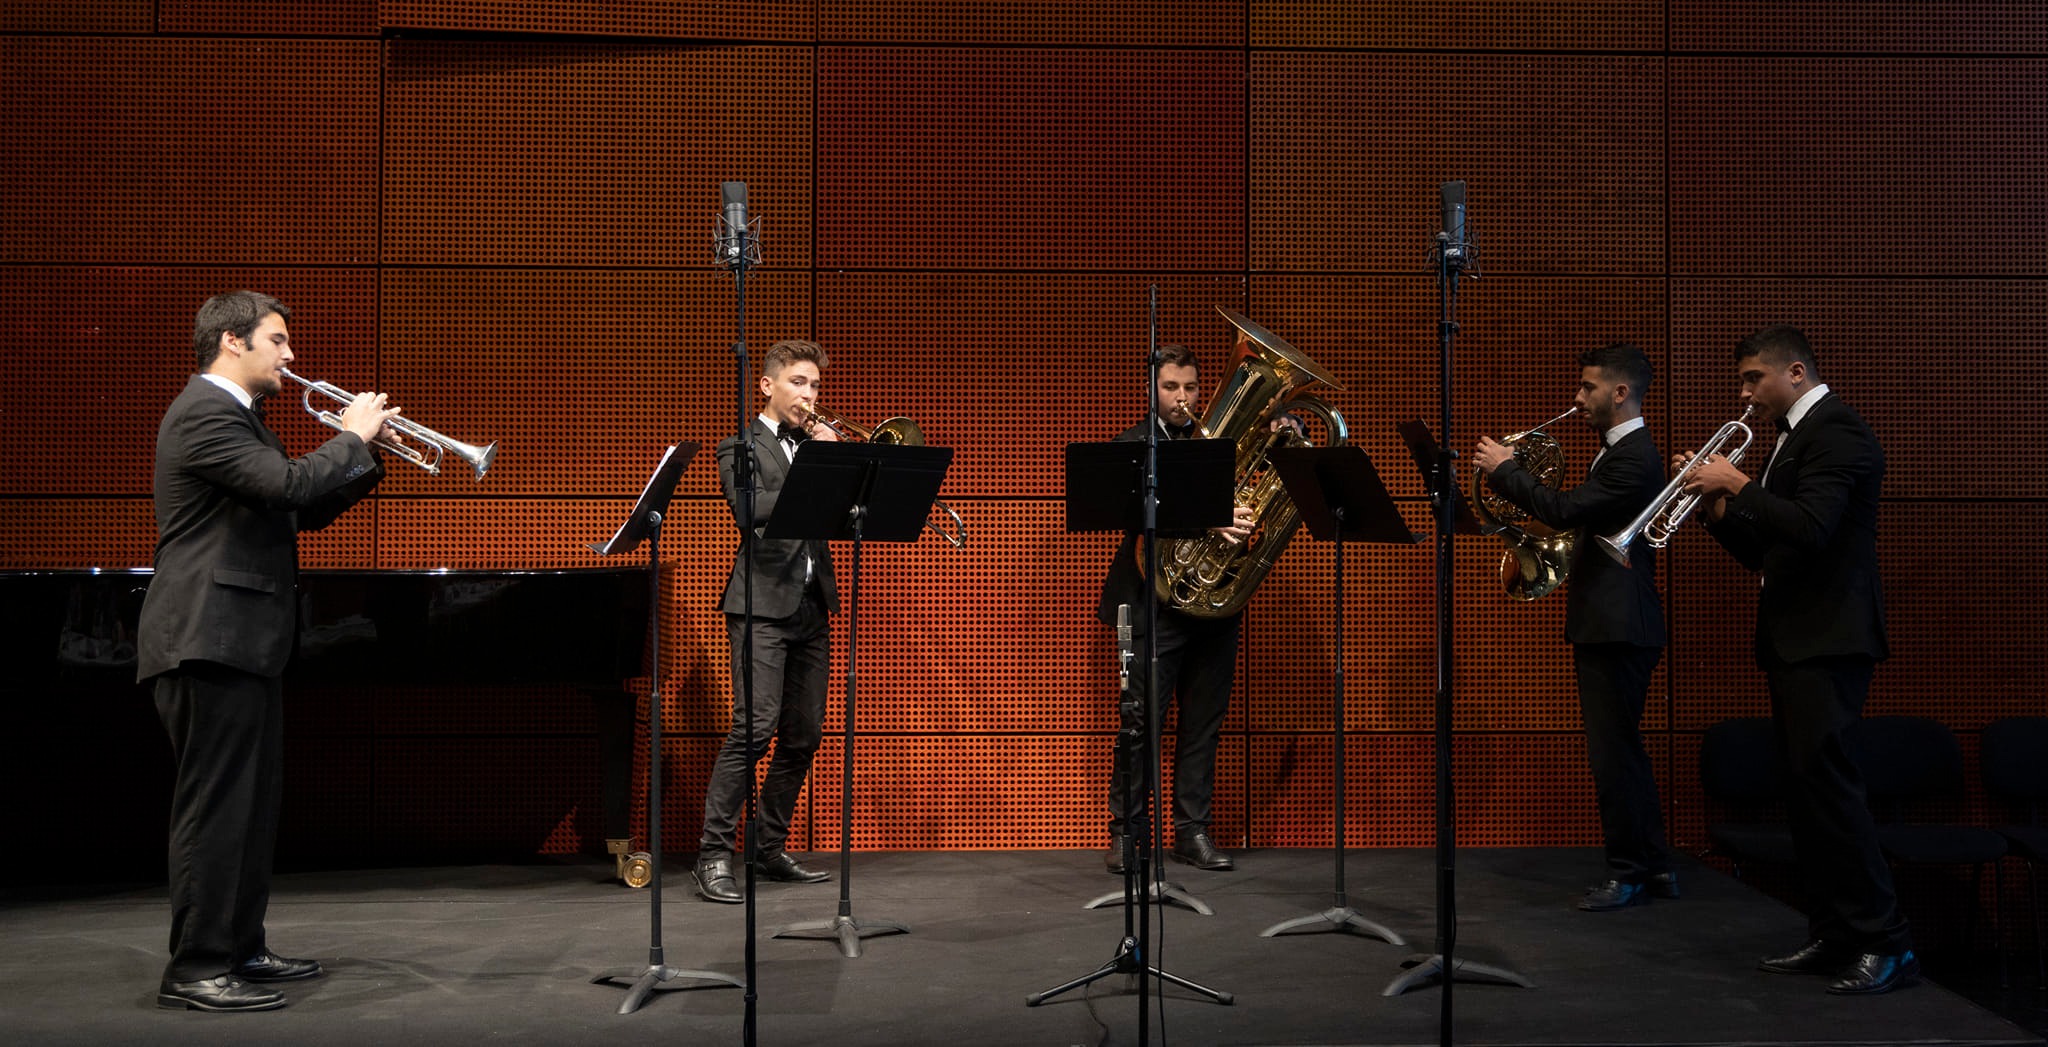 VIANA: Geraz do Lima recebe “Concerto de Ano Novo” pela Viana Brass Quintet Júnior